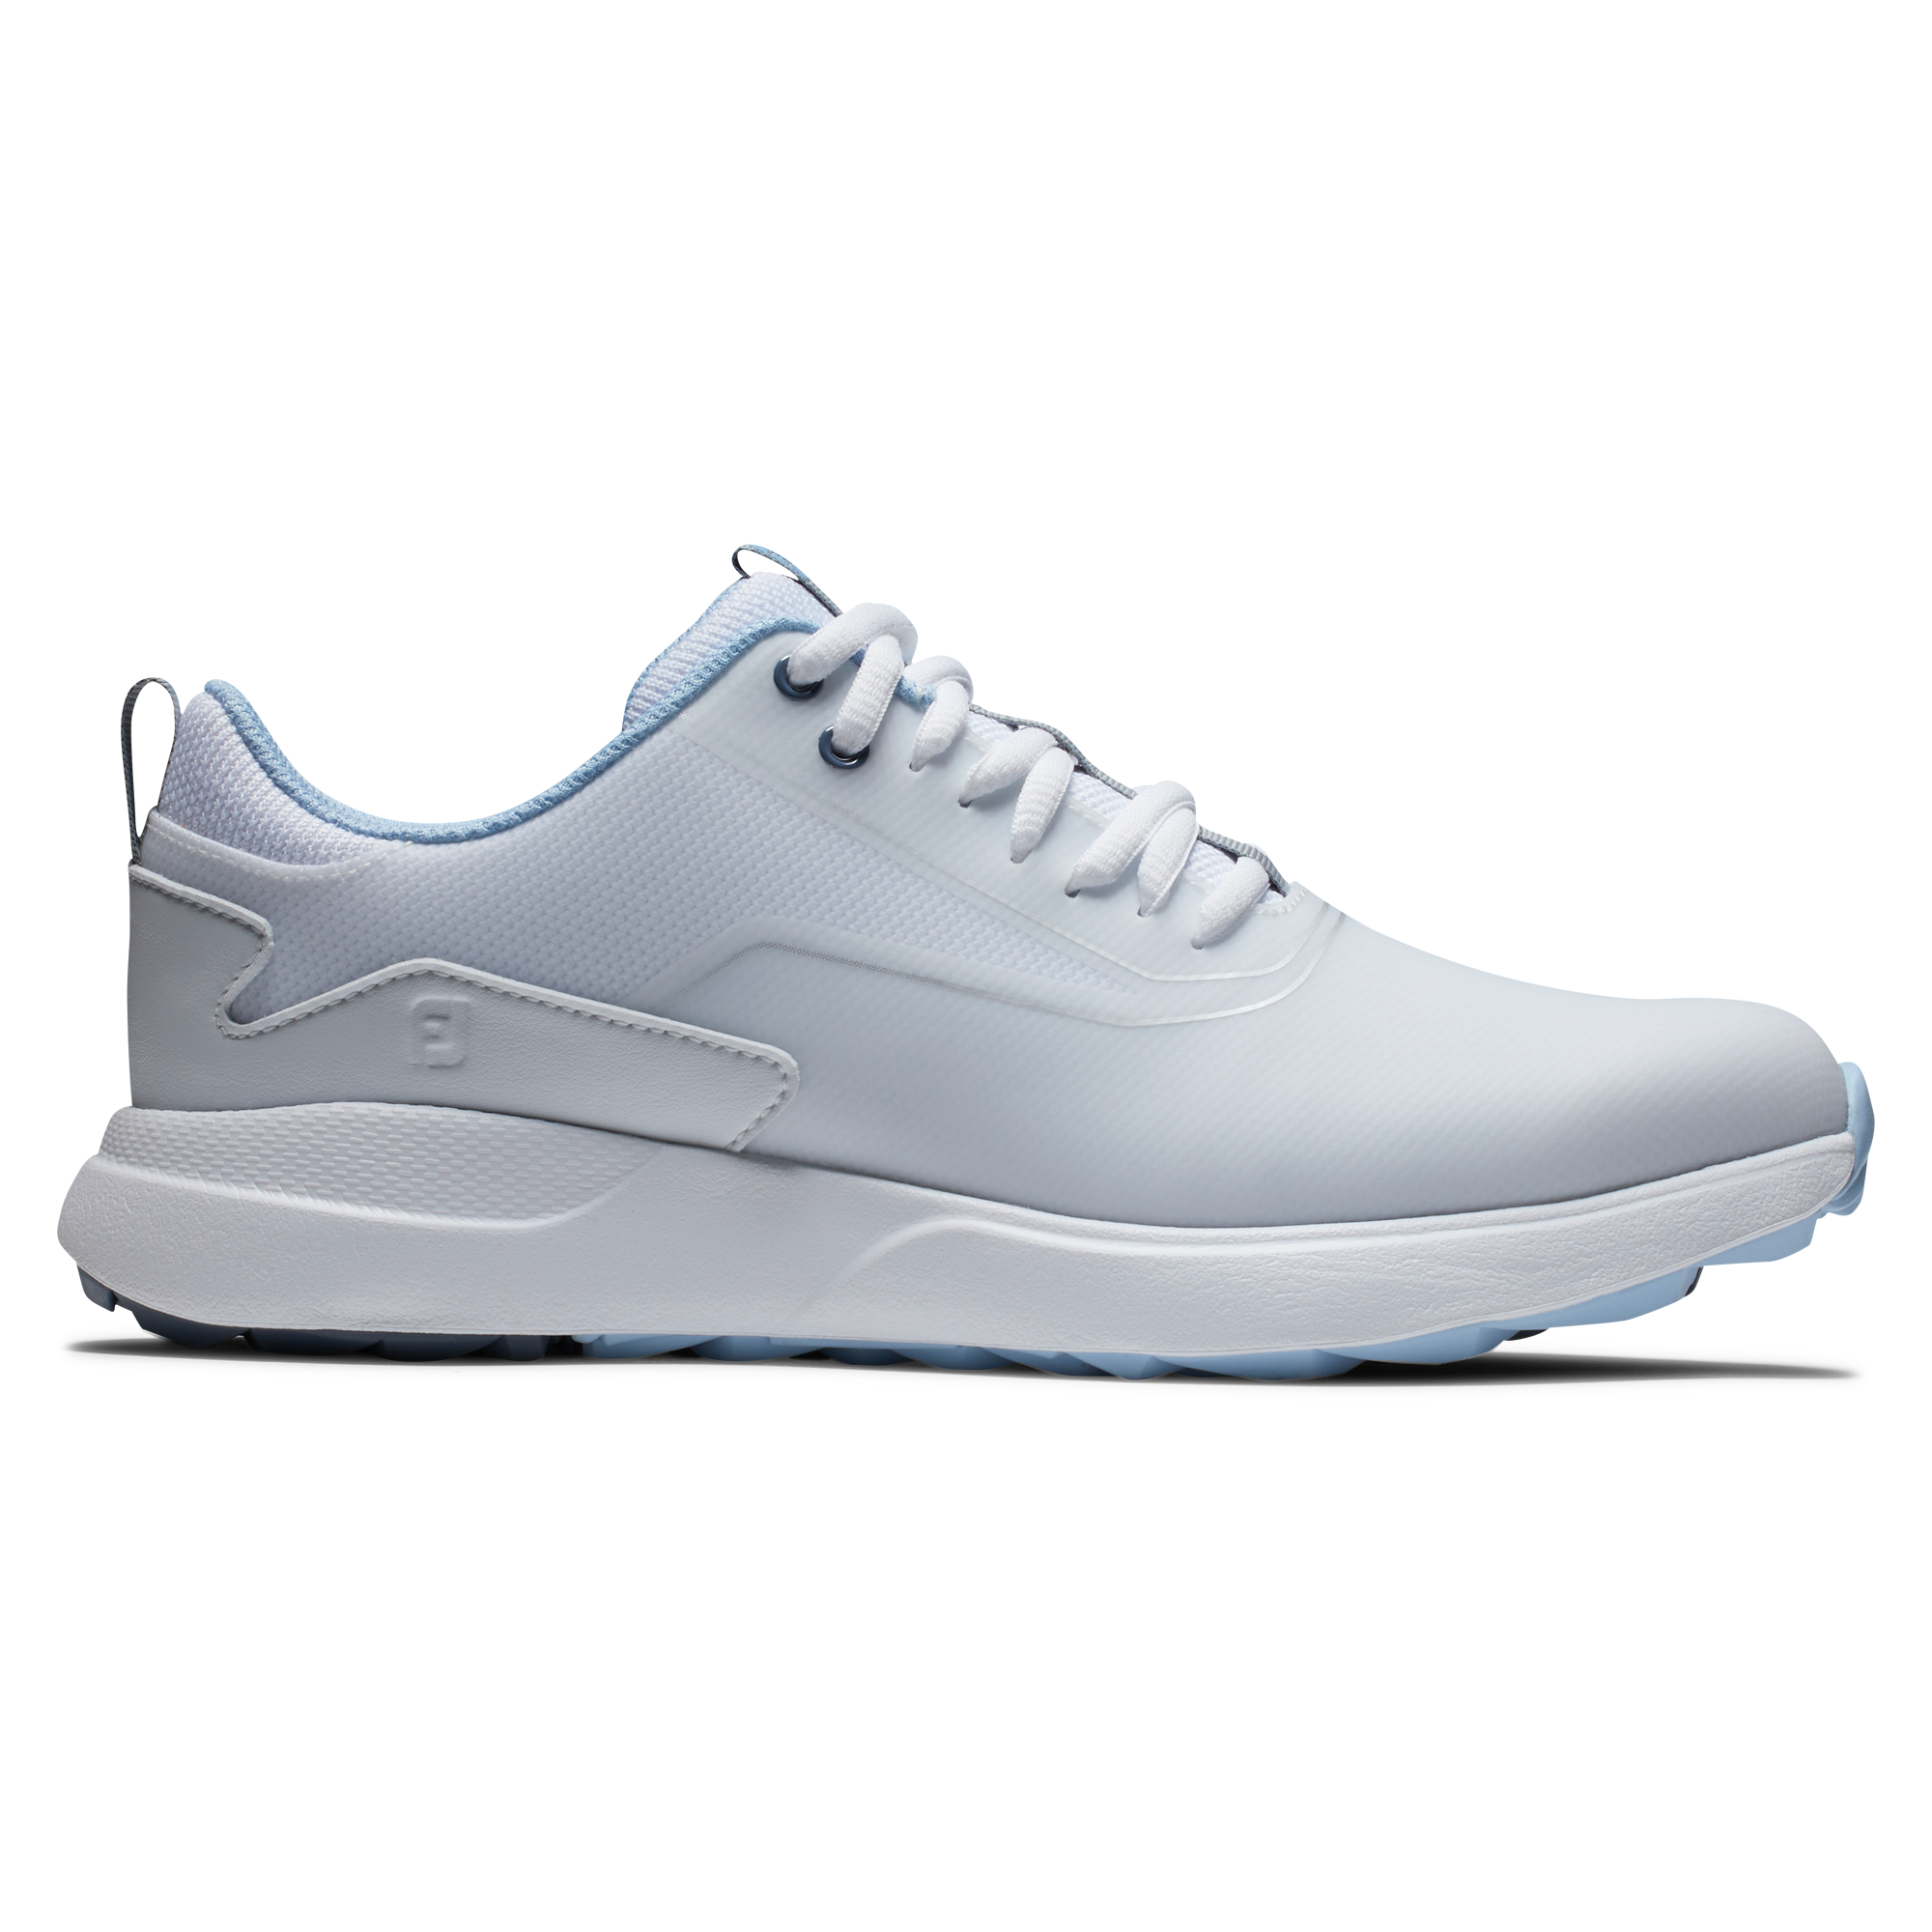 FootJoy Performa dámské golfové boty, bílé/světle modré